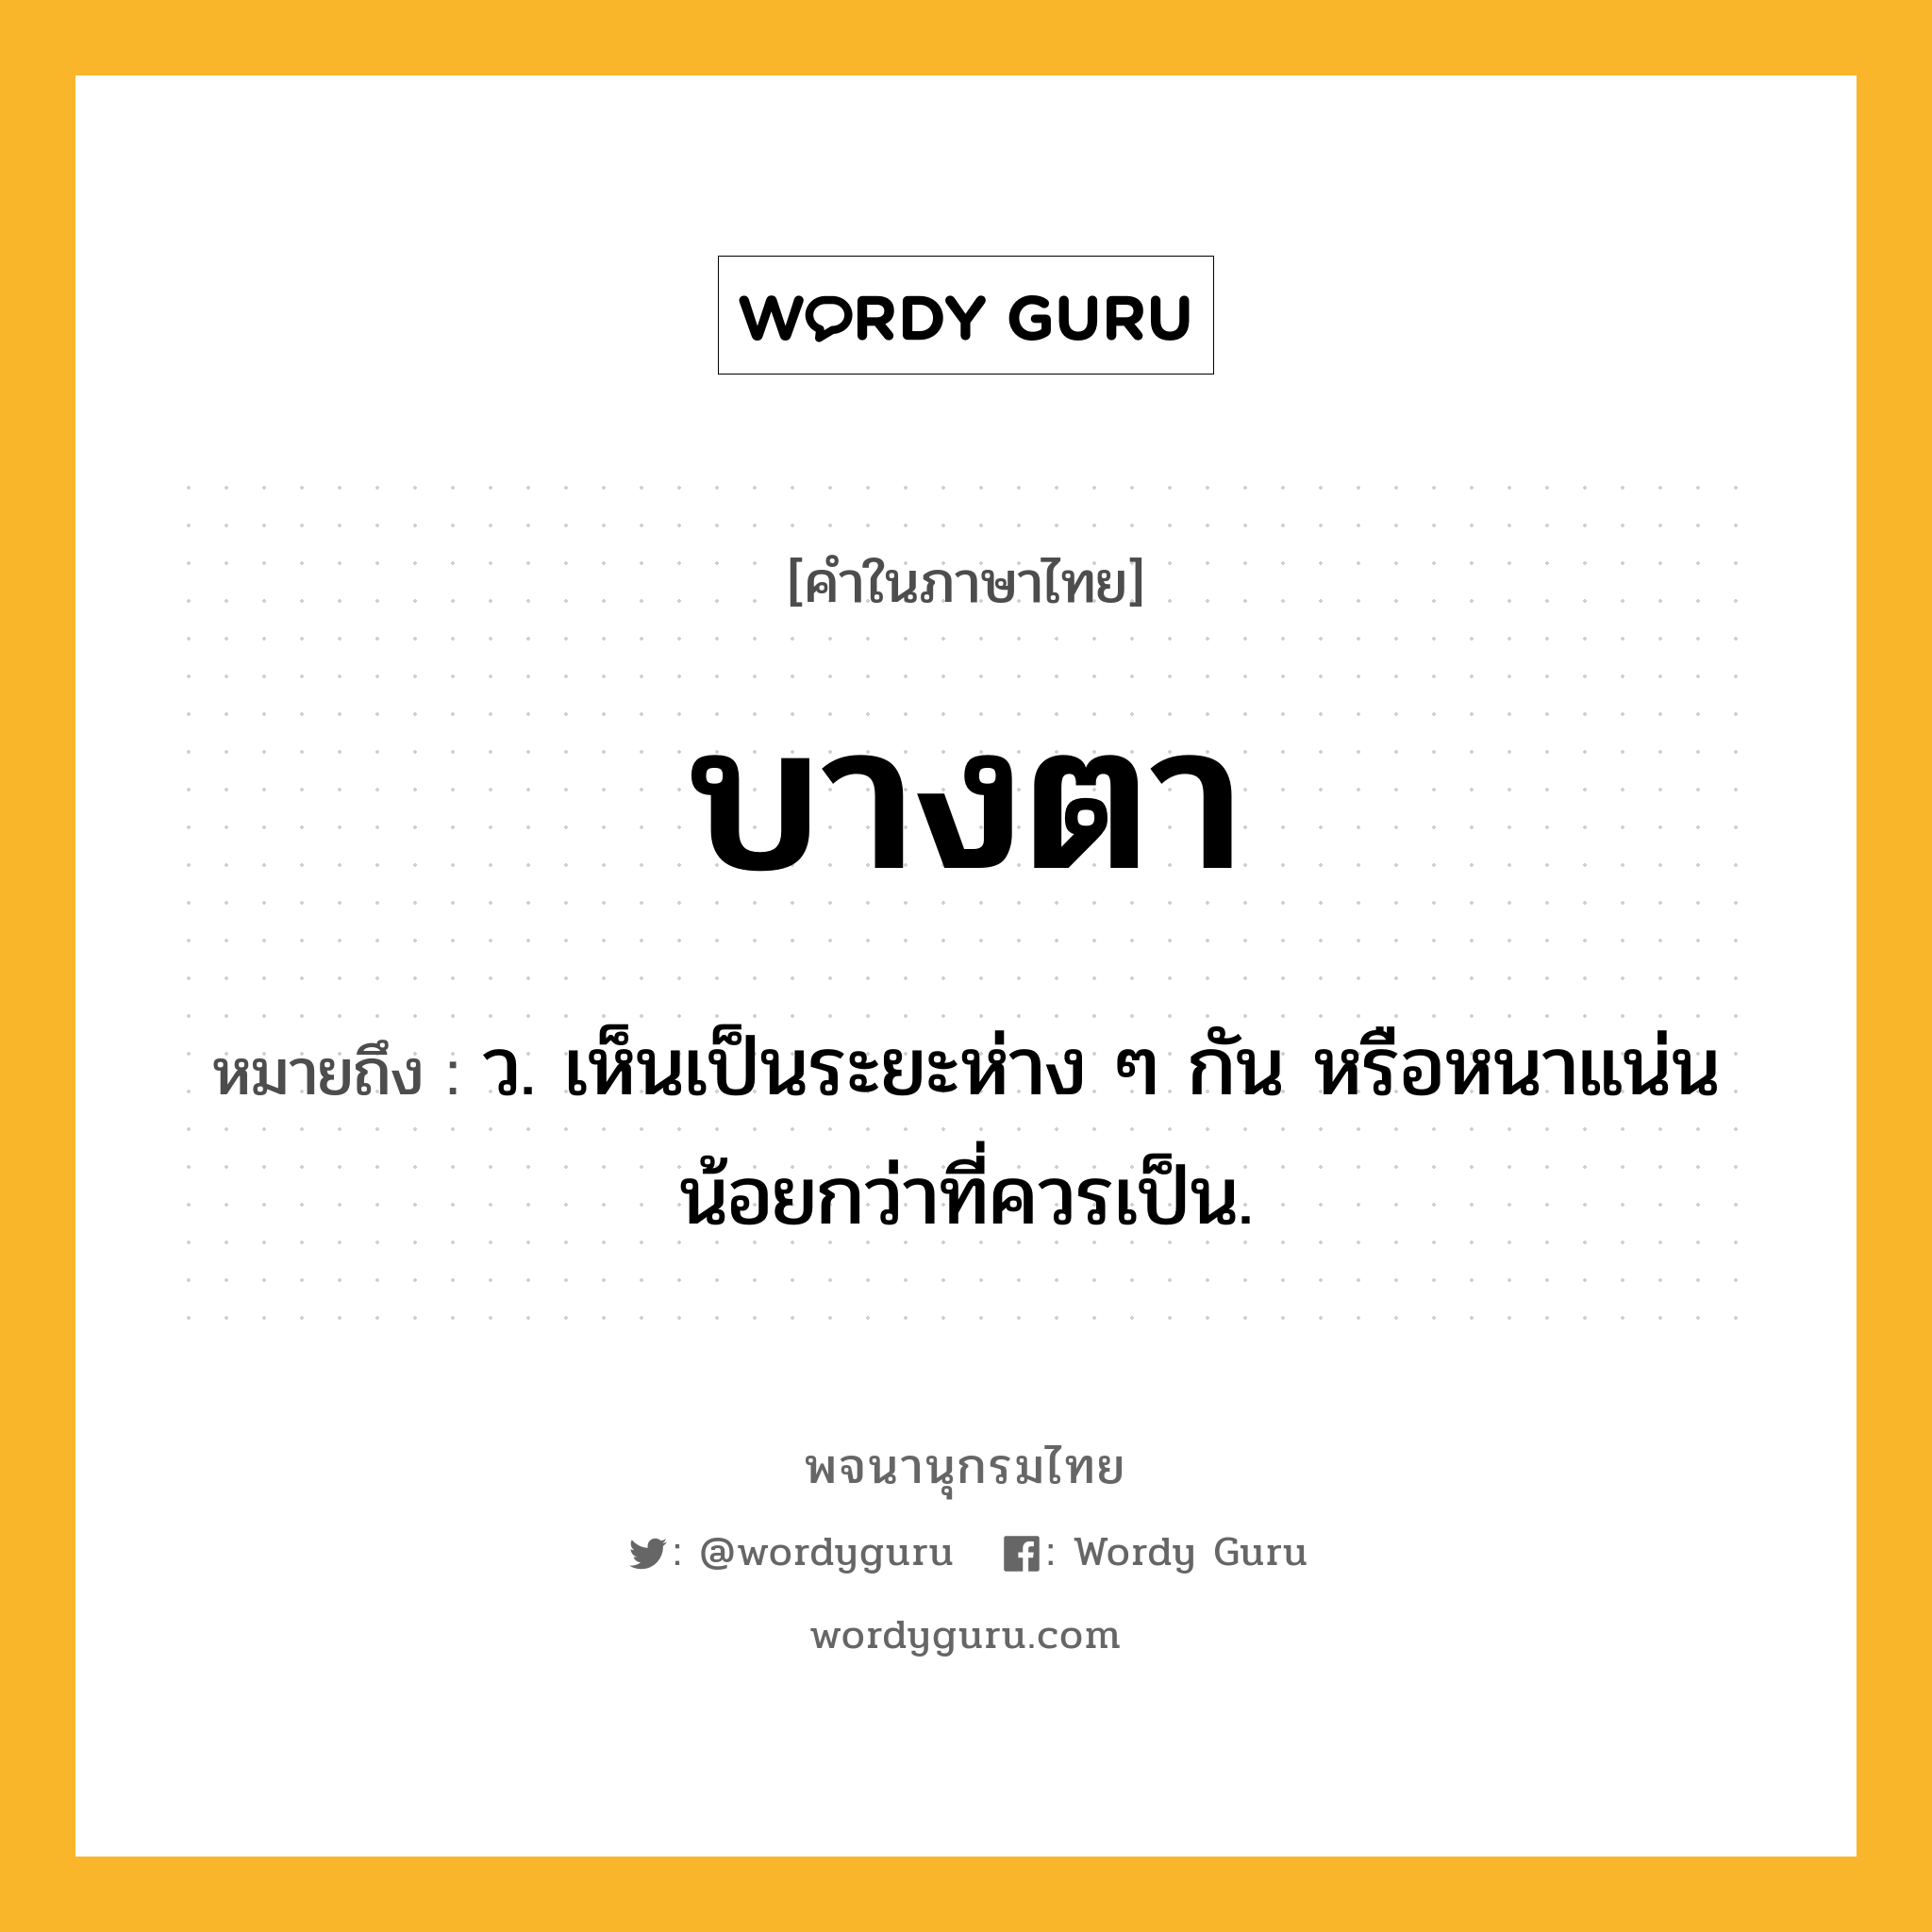 บางตา ความหมาย หมายถึงอะไร?, คำในภาษาไทย บางตา หมายถึง ว. เห็นเป็นระยะห่าง ๆ กัน หรือหนาแน่นน้อยกว่าที่ควรเป็น.